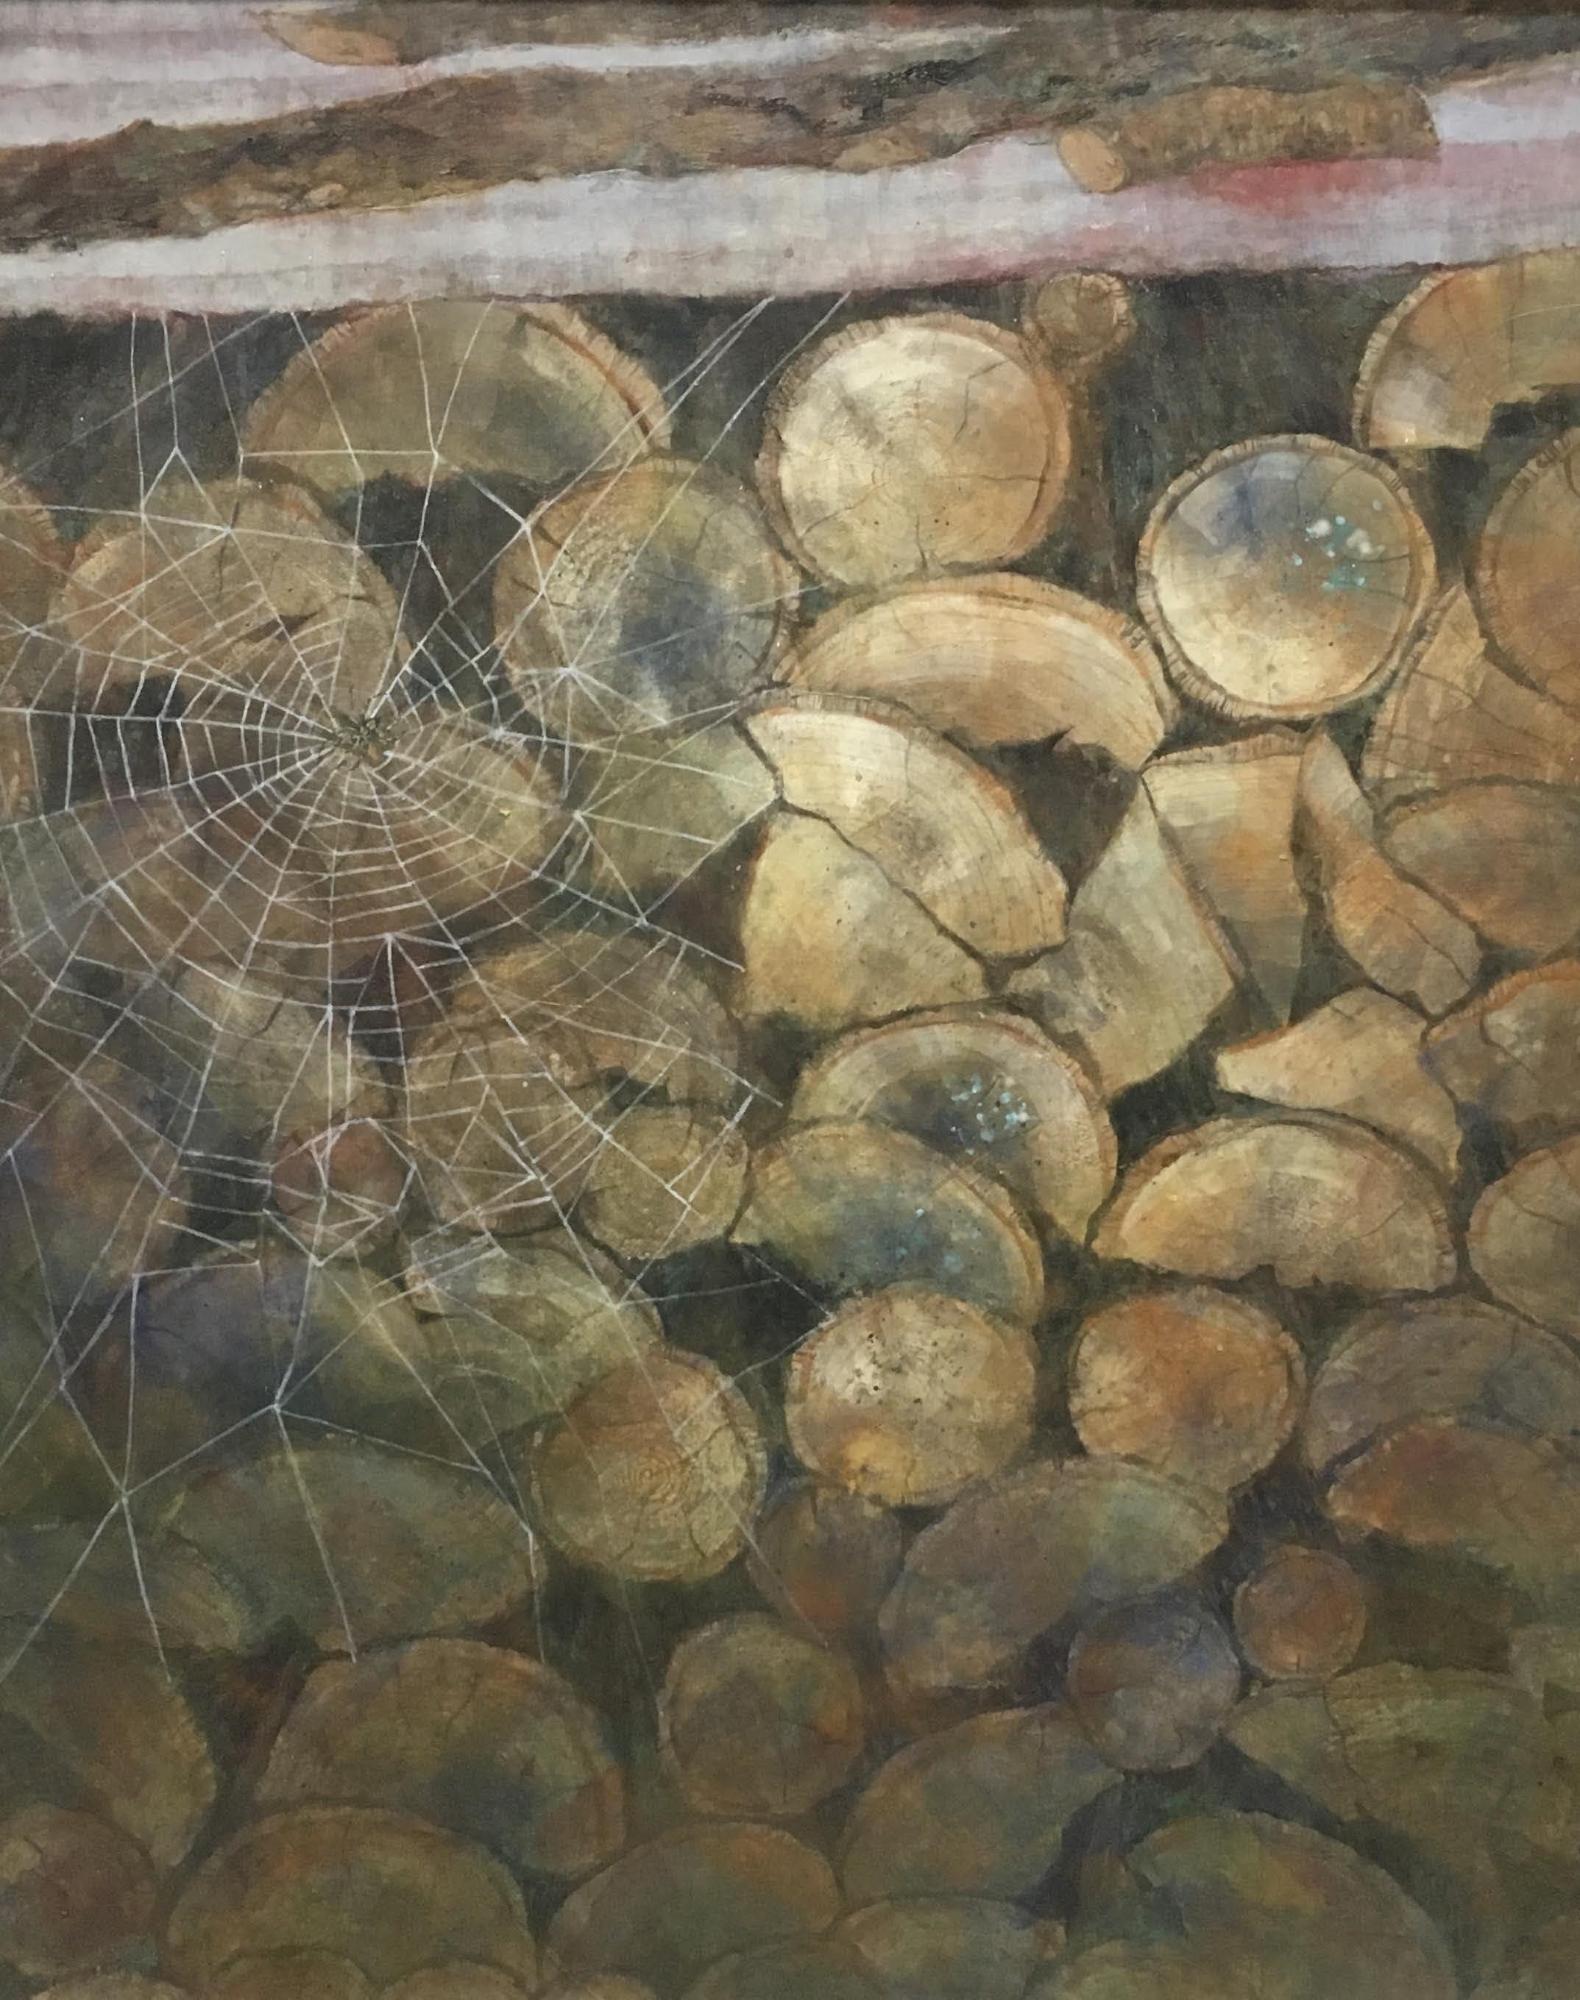 日本画部門無鑑査奨励賞受賞作品で薪が積まれている所に蜘蛛の巣が張っている様子を描いた作品の写真